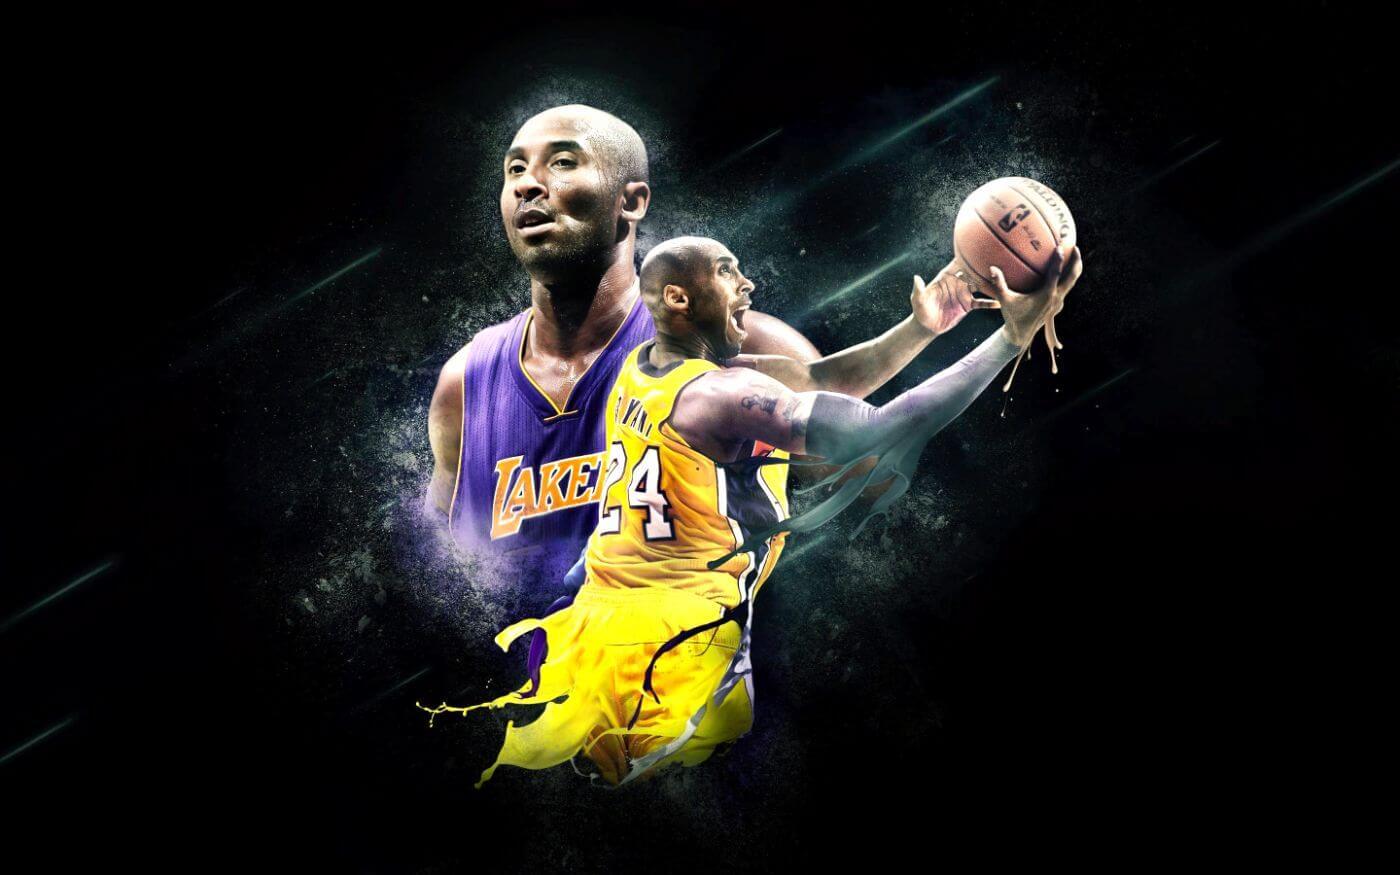 Los Angeles Lakers - Kobe Bryant 15 Poster Print - Item # VARTIARP14504 -  Posterazzi